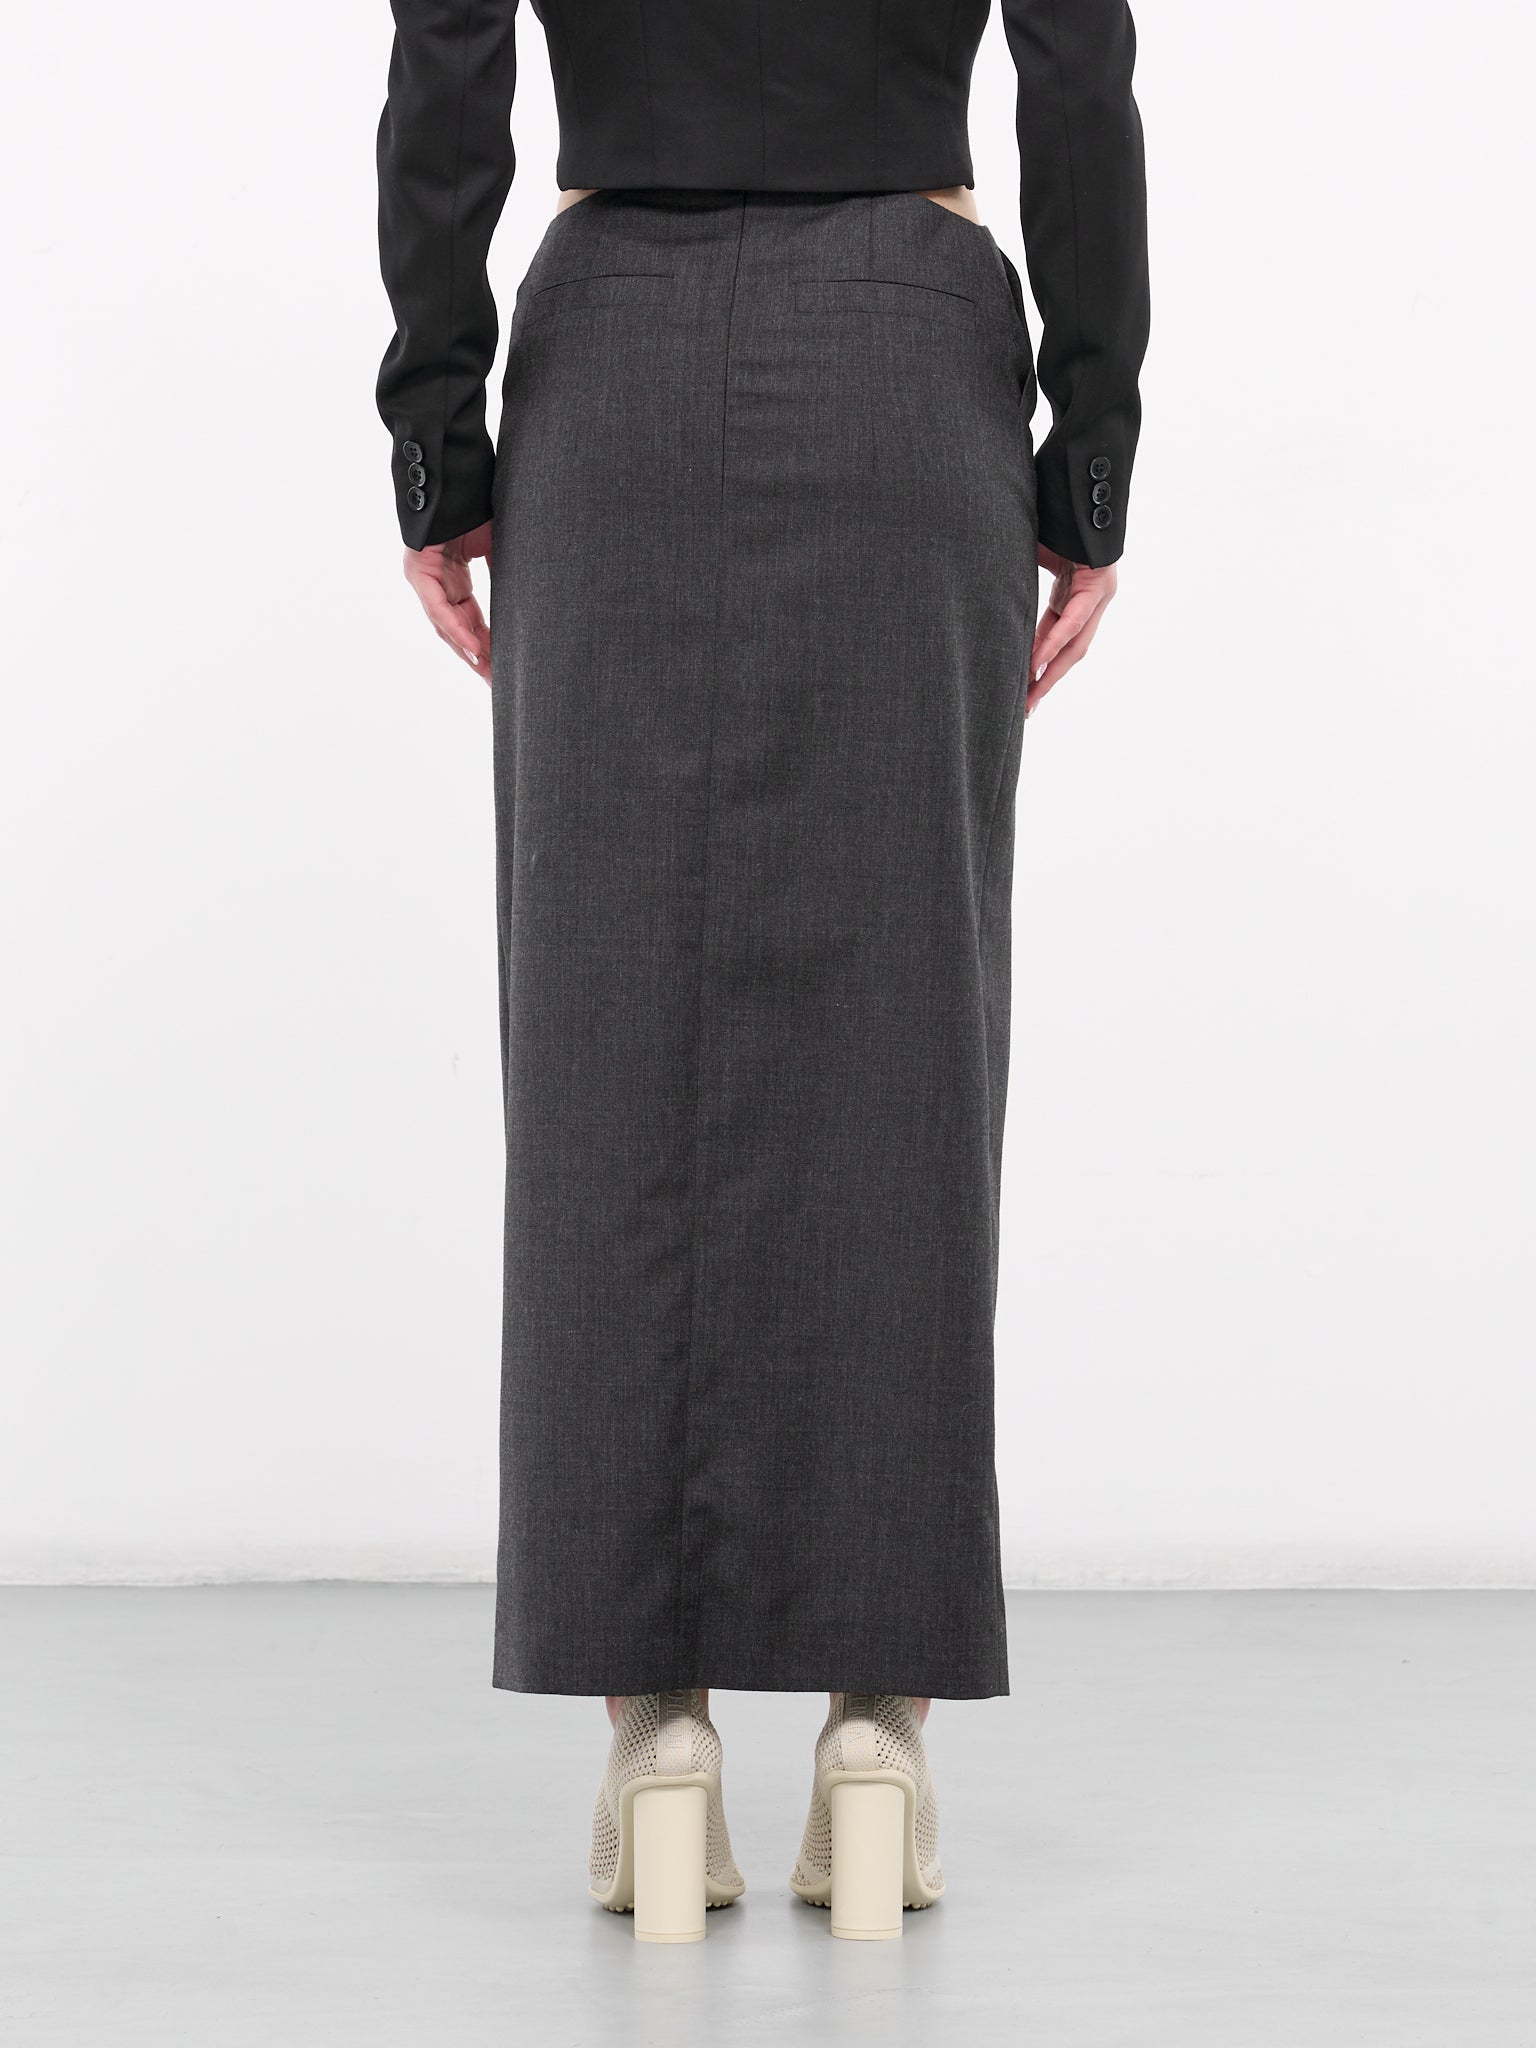 Buckled Skirt (SKIRT-6-GREY)